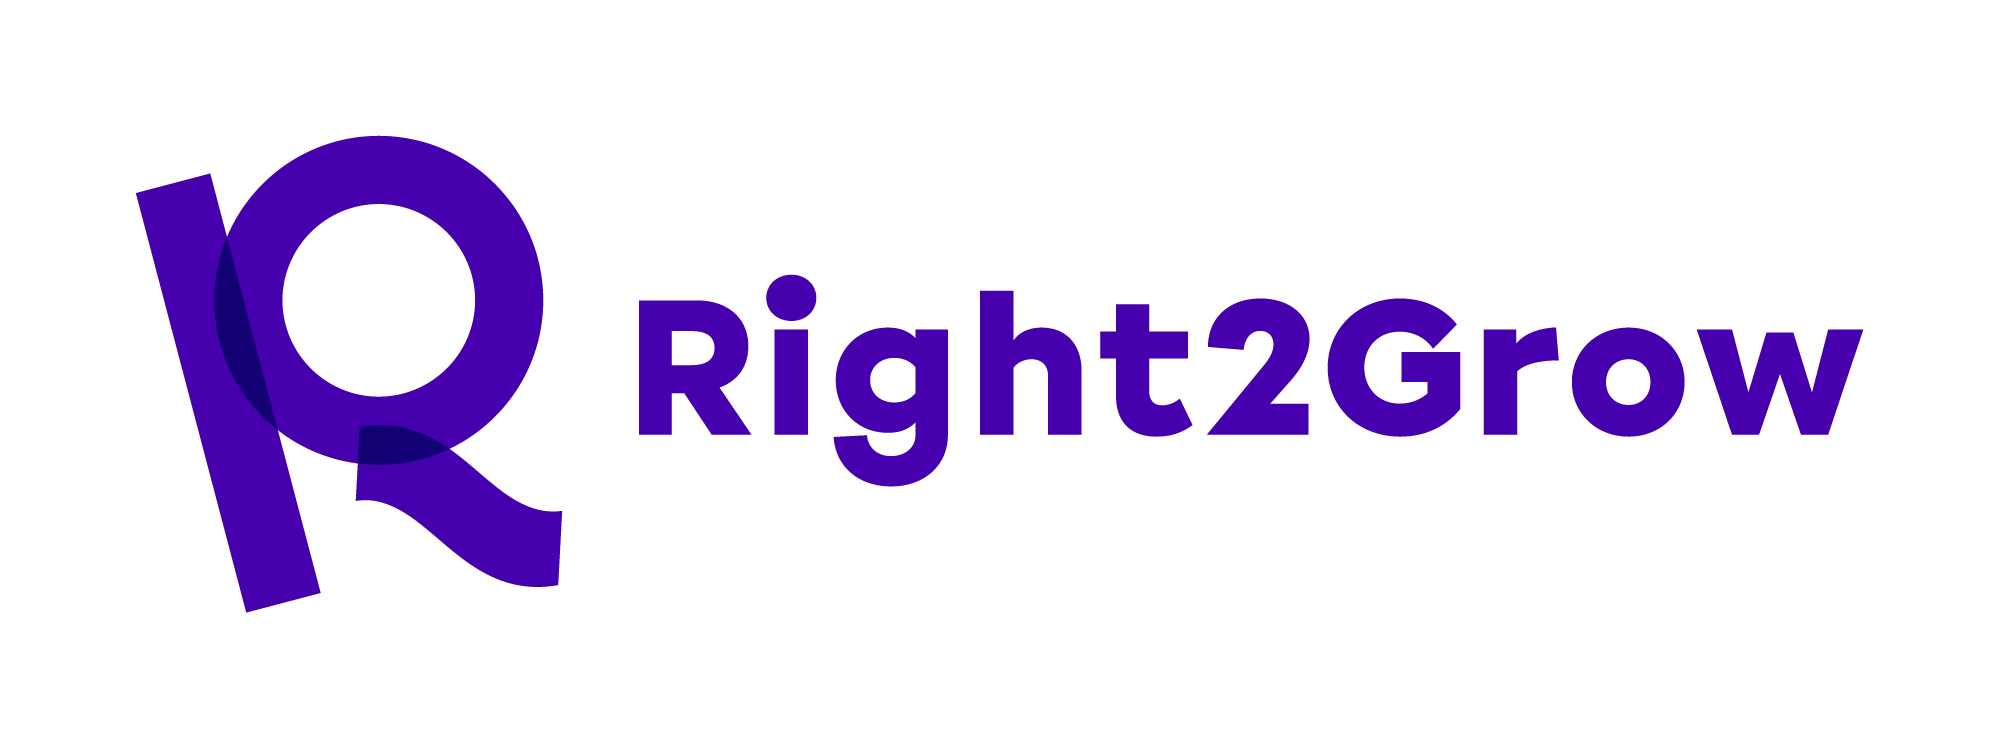 R2G - logo - purple RGB (002)